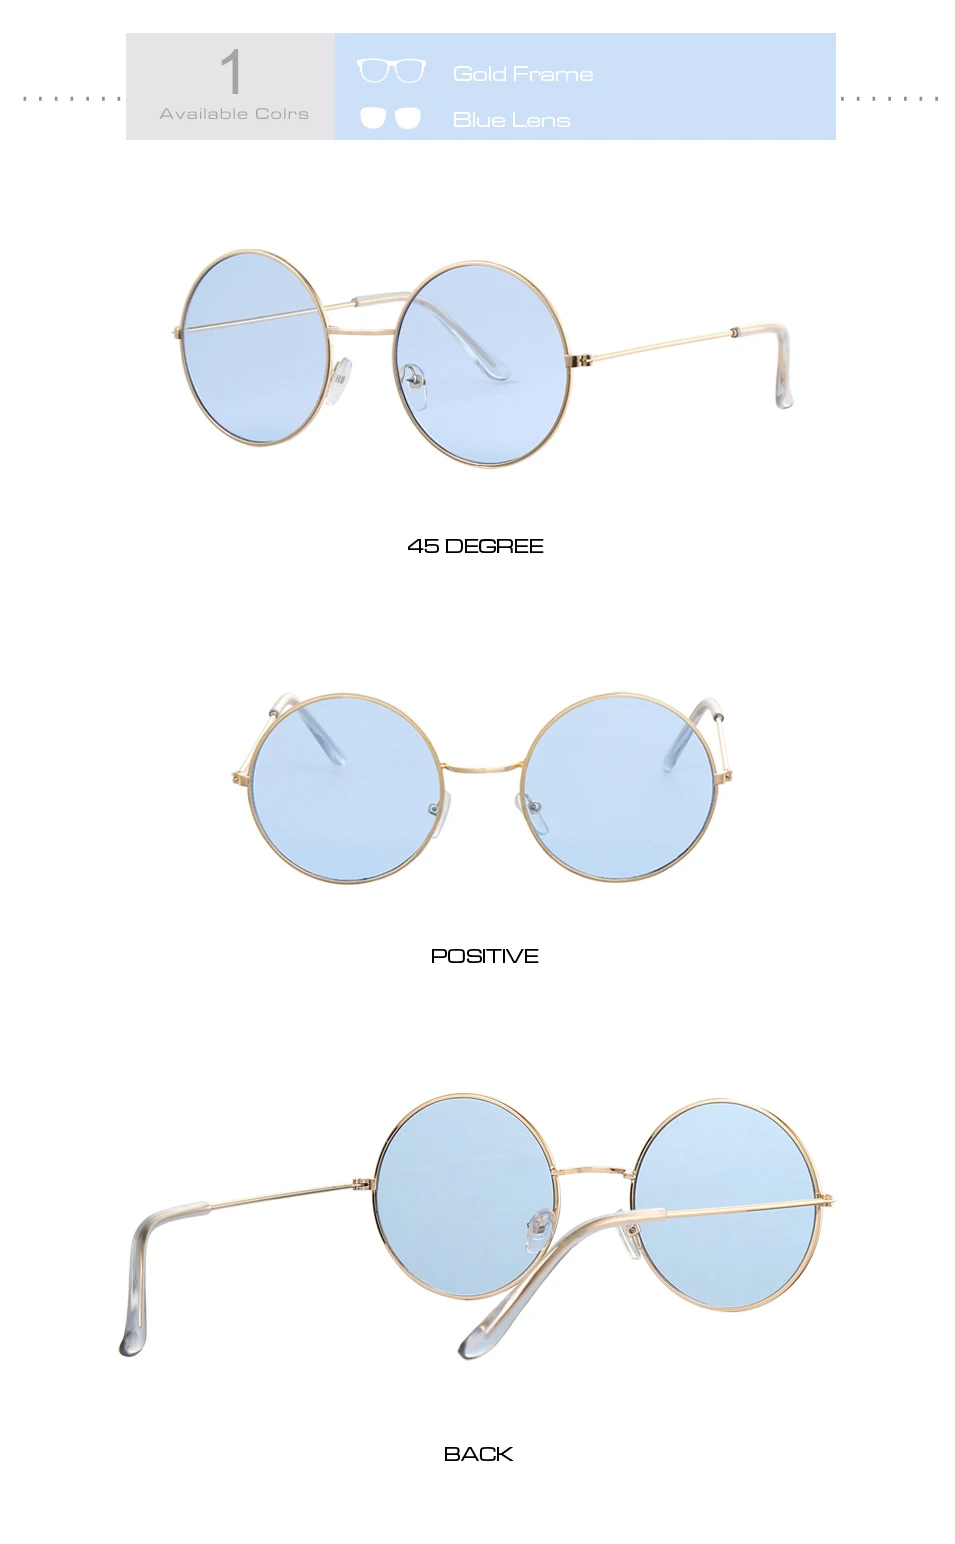 Винтажные круглые зеркальные солнцезащитные очки маленького размера для женщин, фирменный дизайн, металлическая оправа, женские солнцезащитные очки, стильные ретро очки